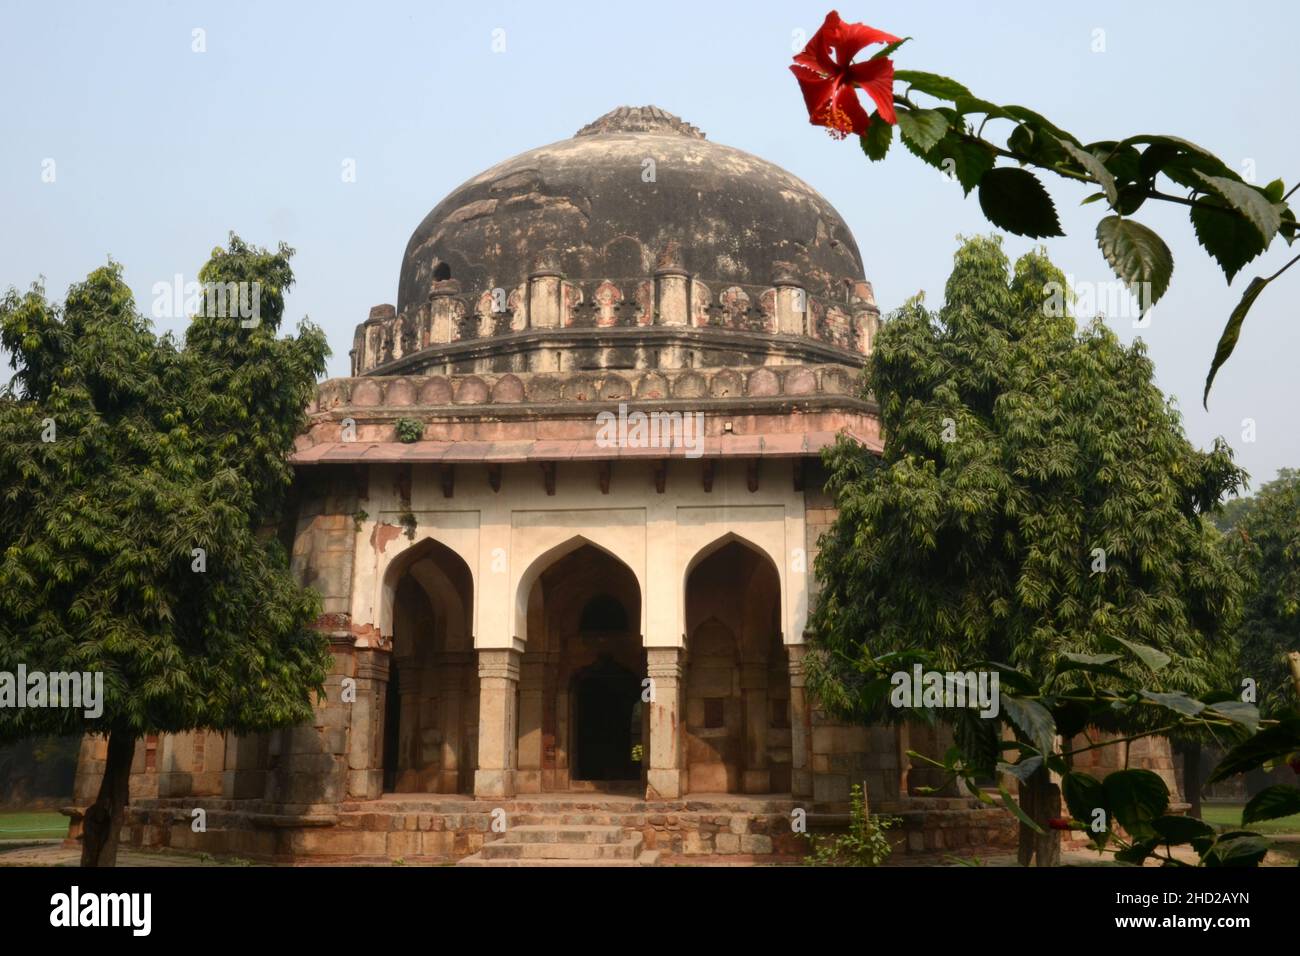 Sikandar Lodi tomb at the Lodhi Gardens in Delhi Stock Photo